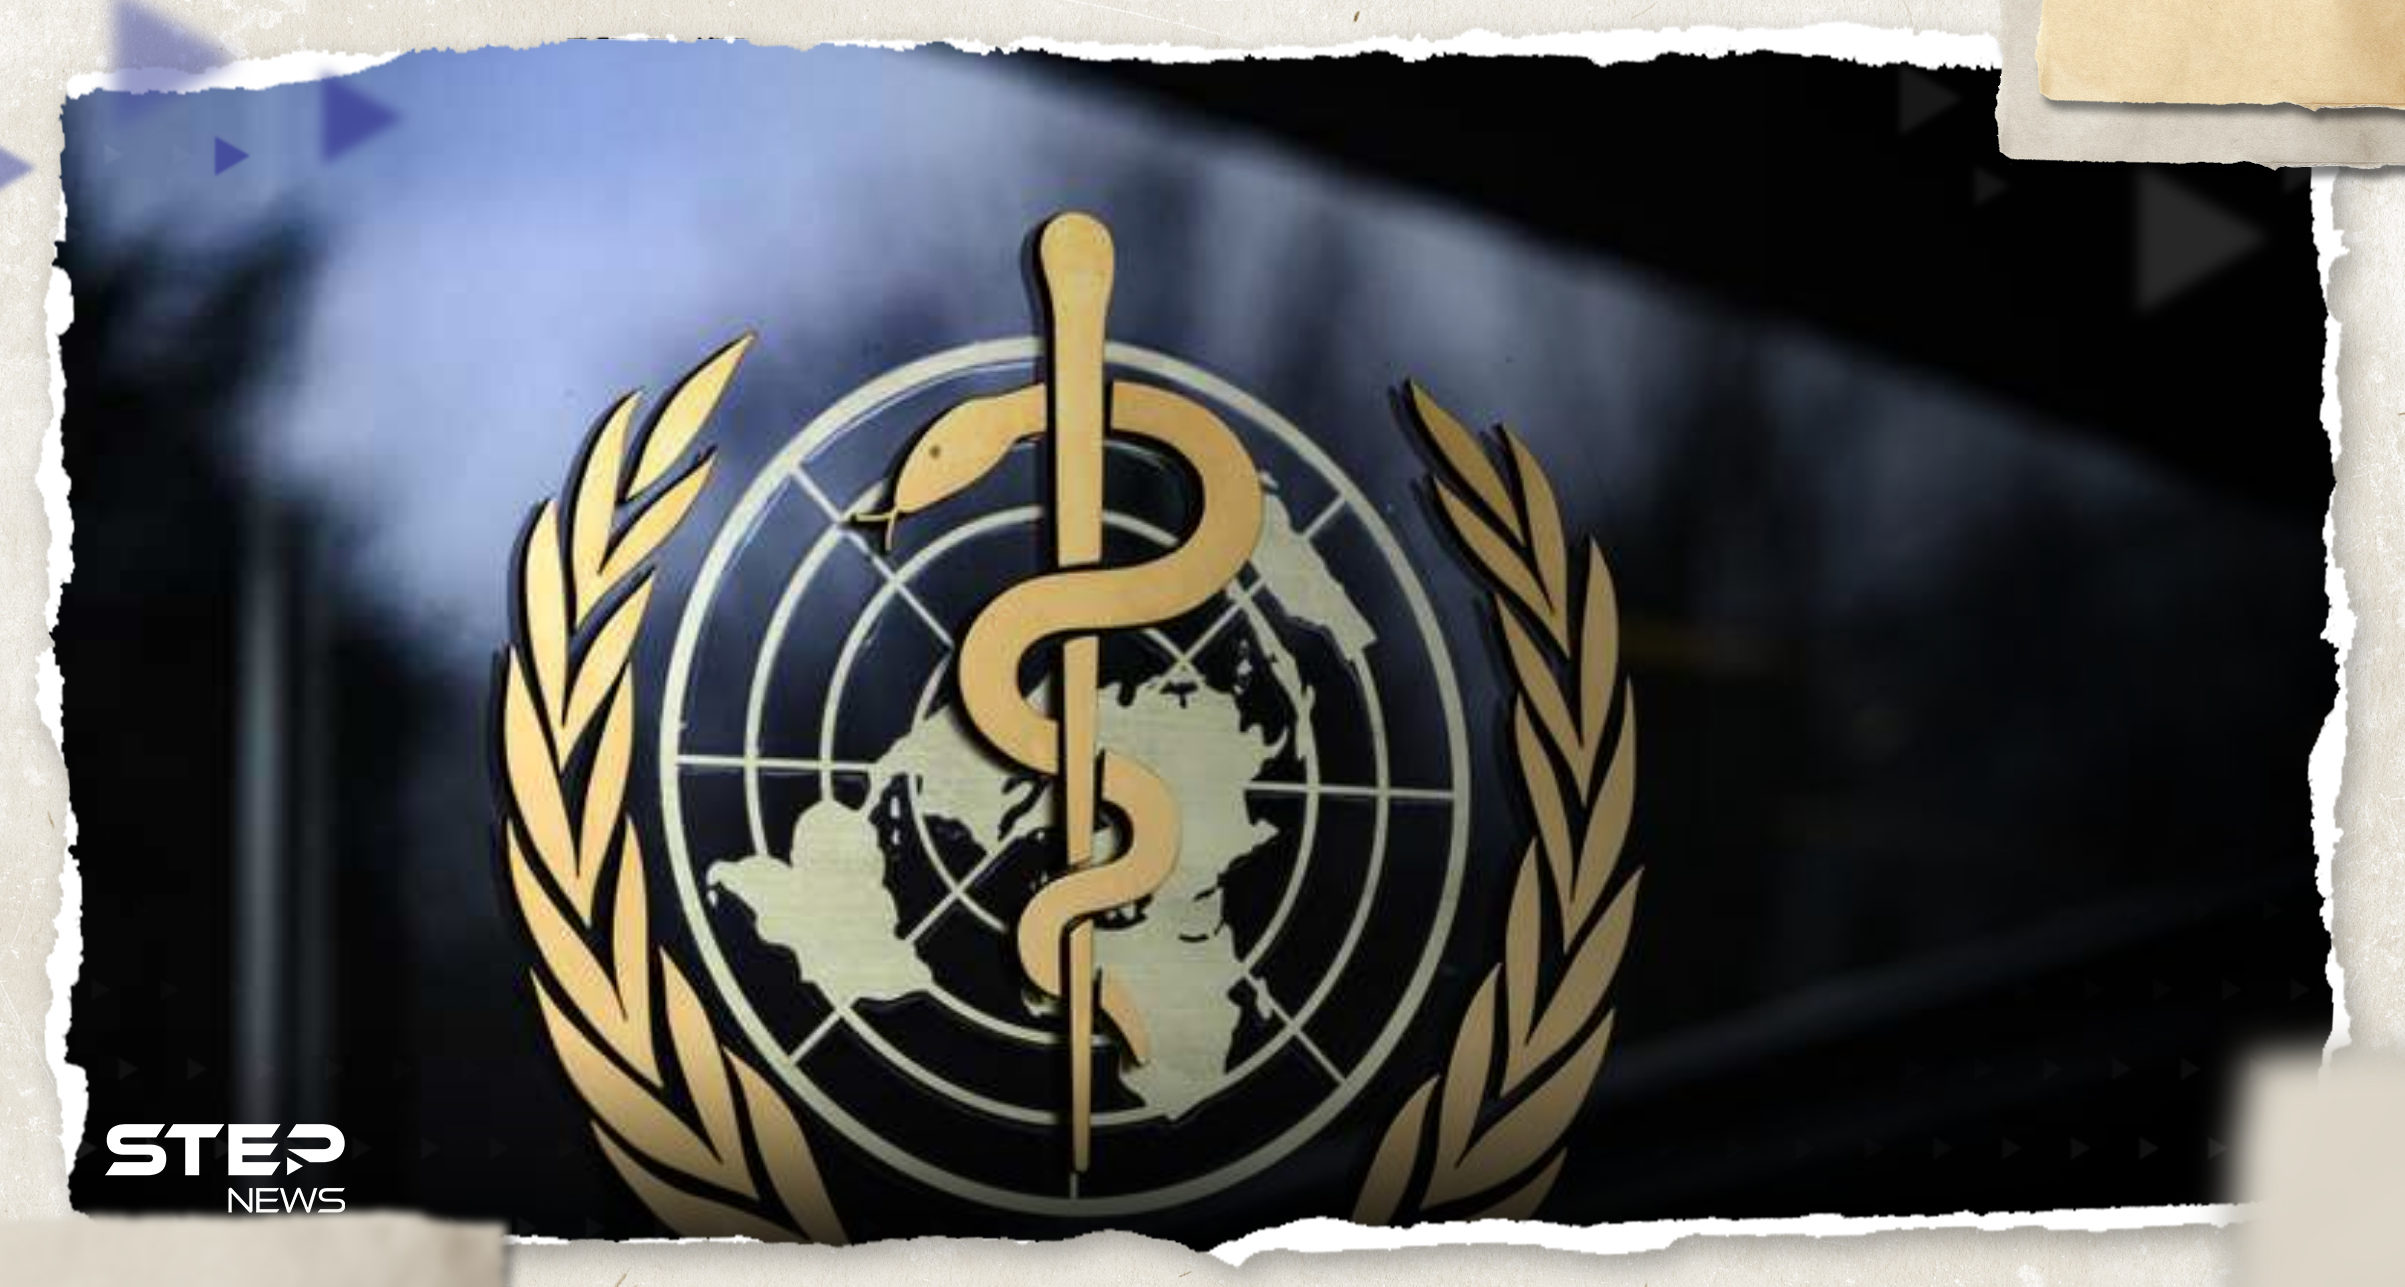 منظمة الصحة العالمية تدق ناقوس الخطر: استعدوا لمرض "أشد فتكًا" من كوفيد-19 